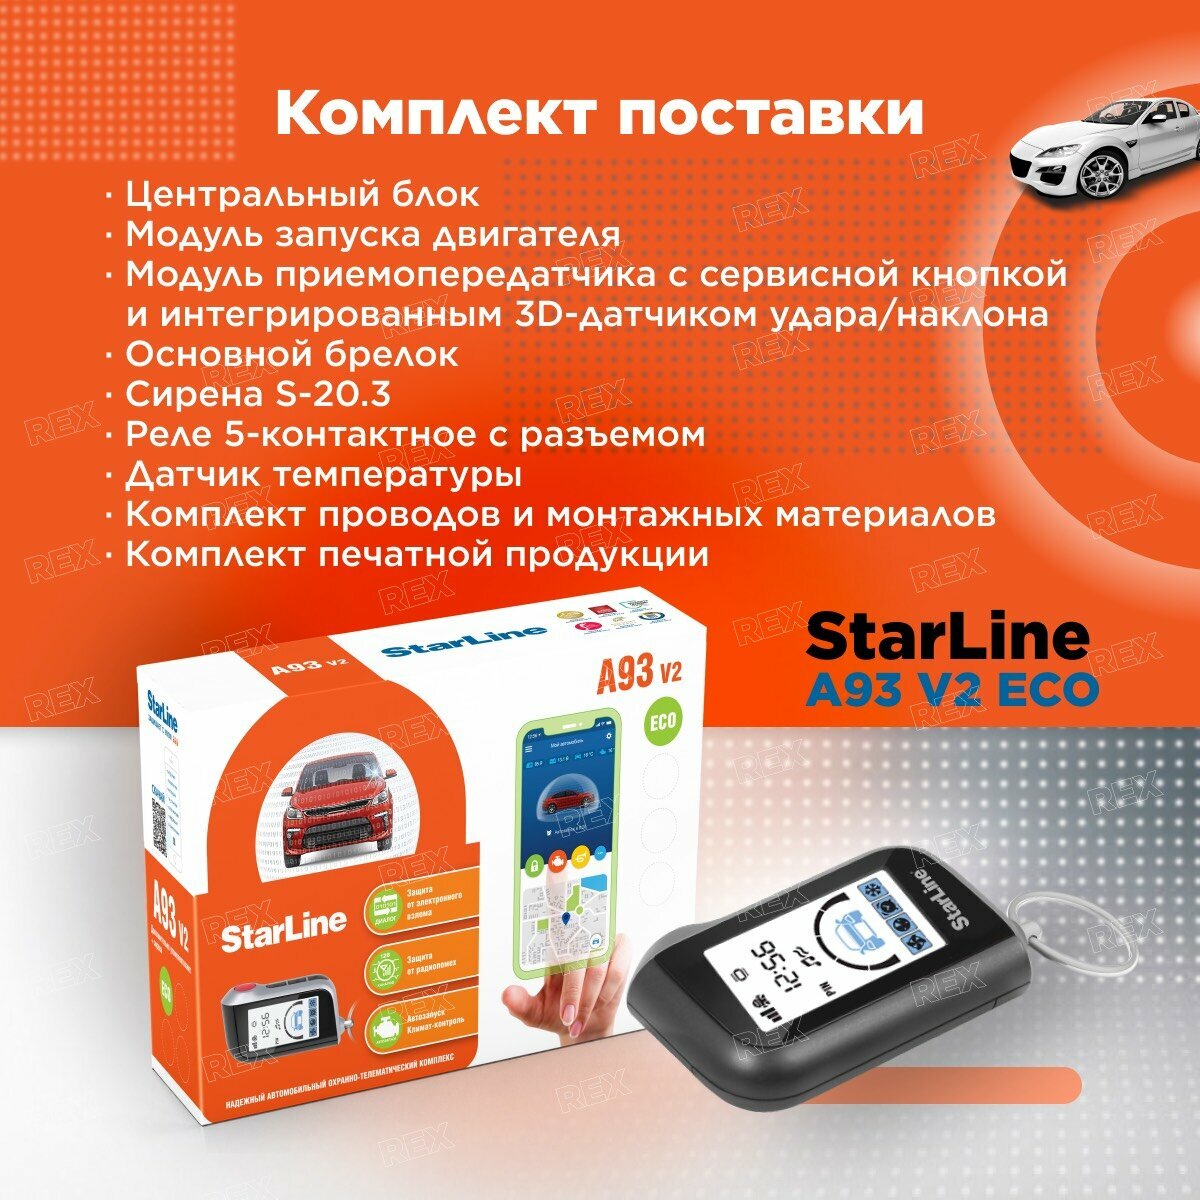 Автосигнализация с автозапуском StarLine A93 V2 ECO